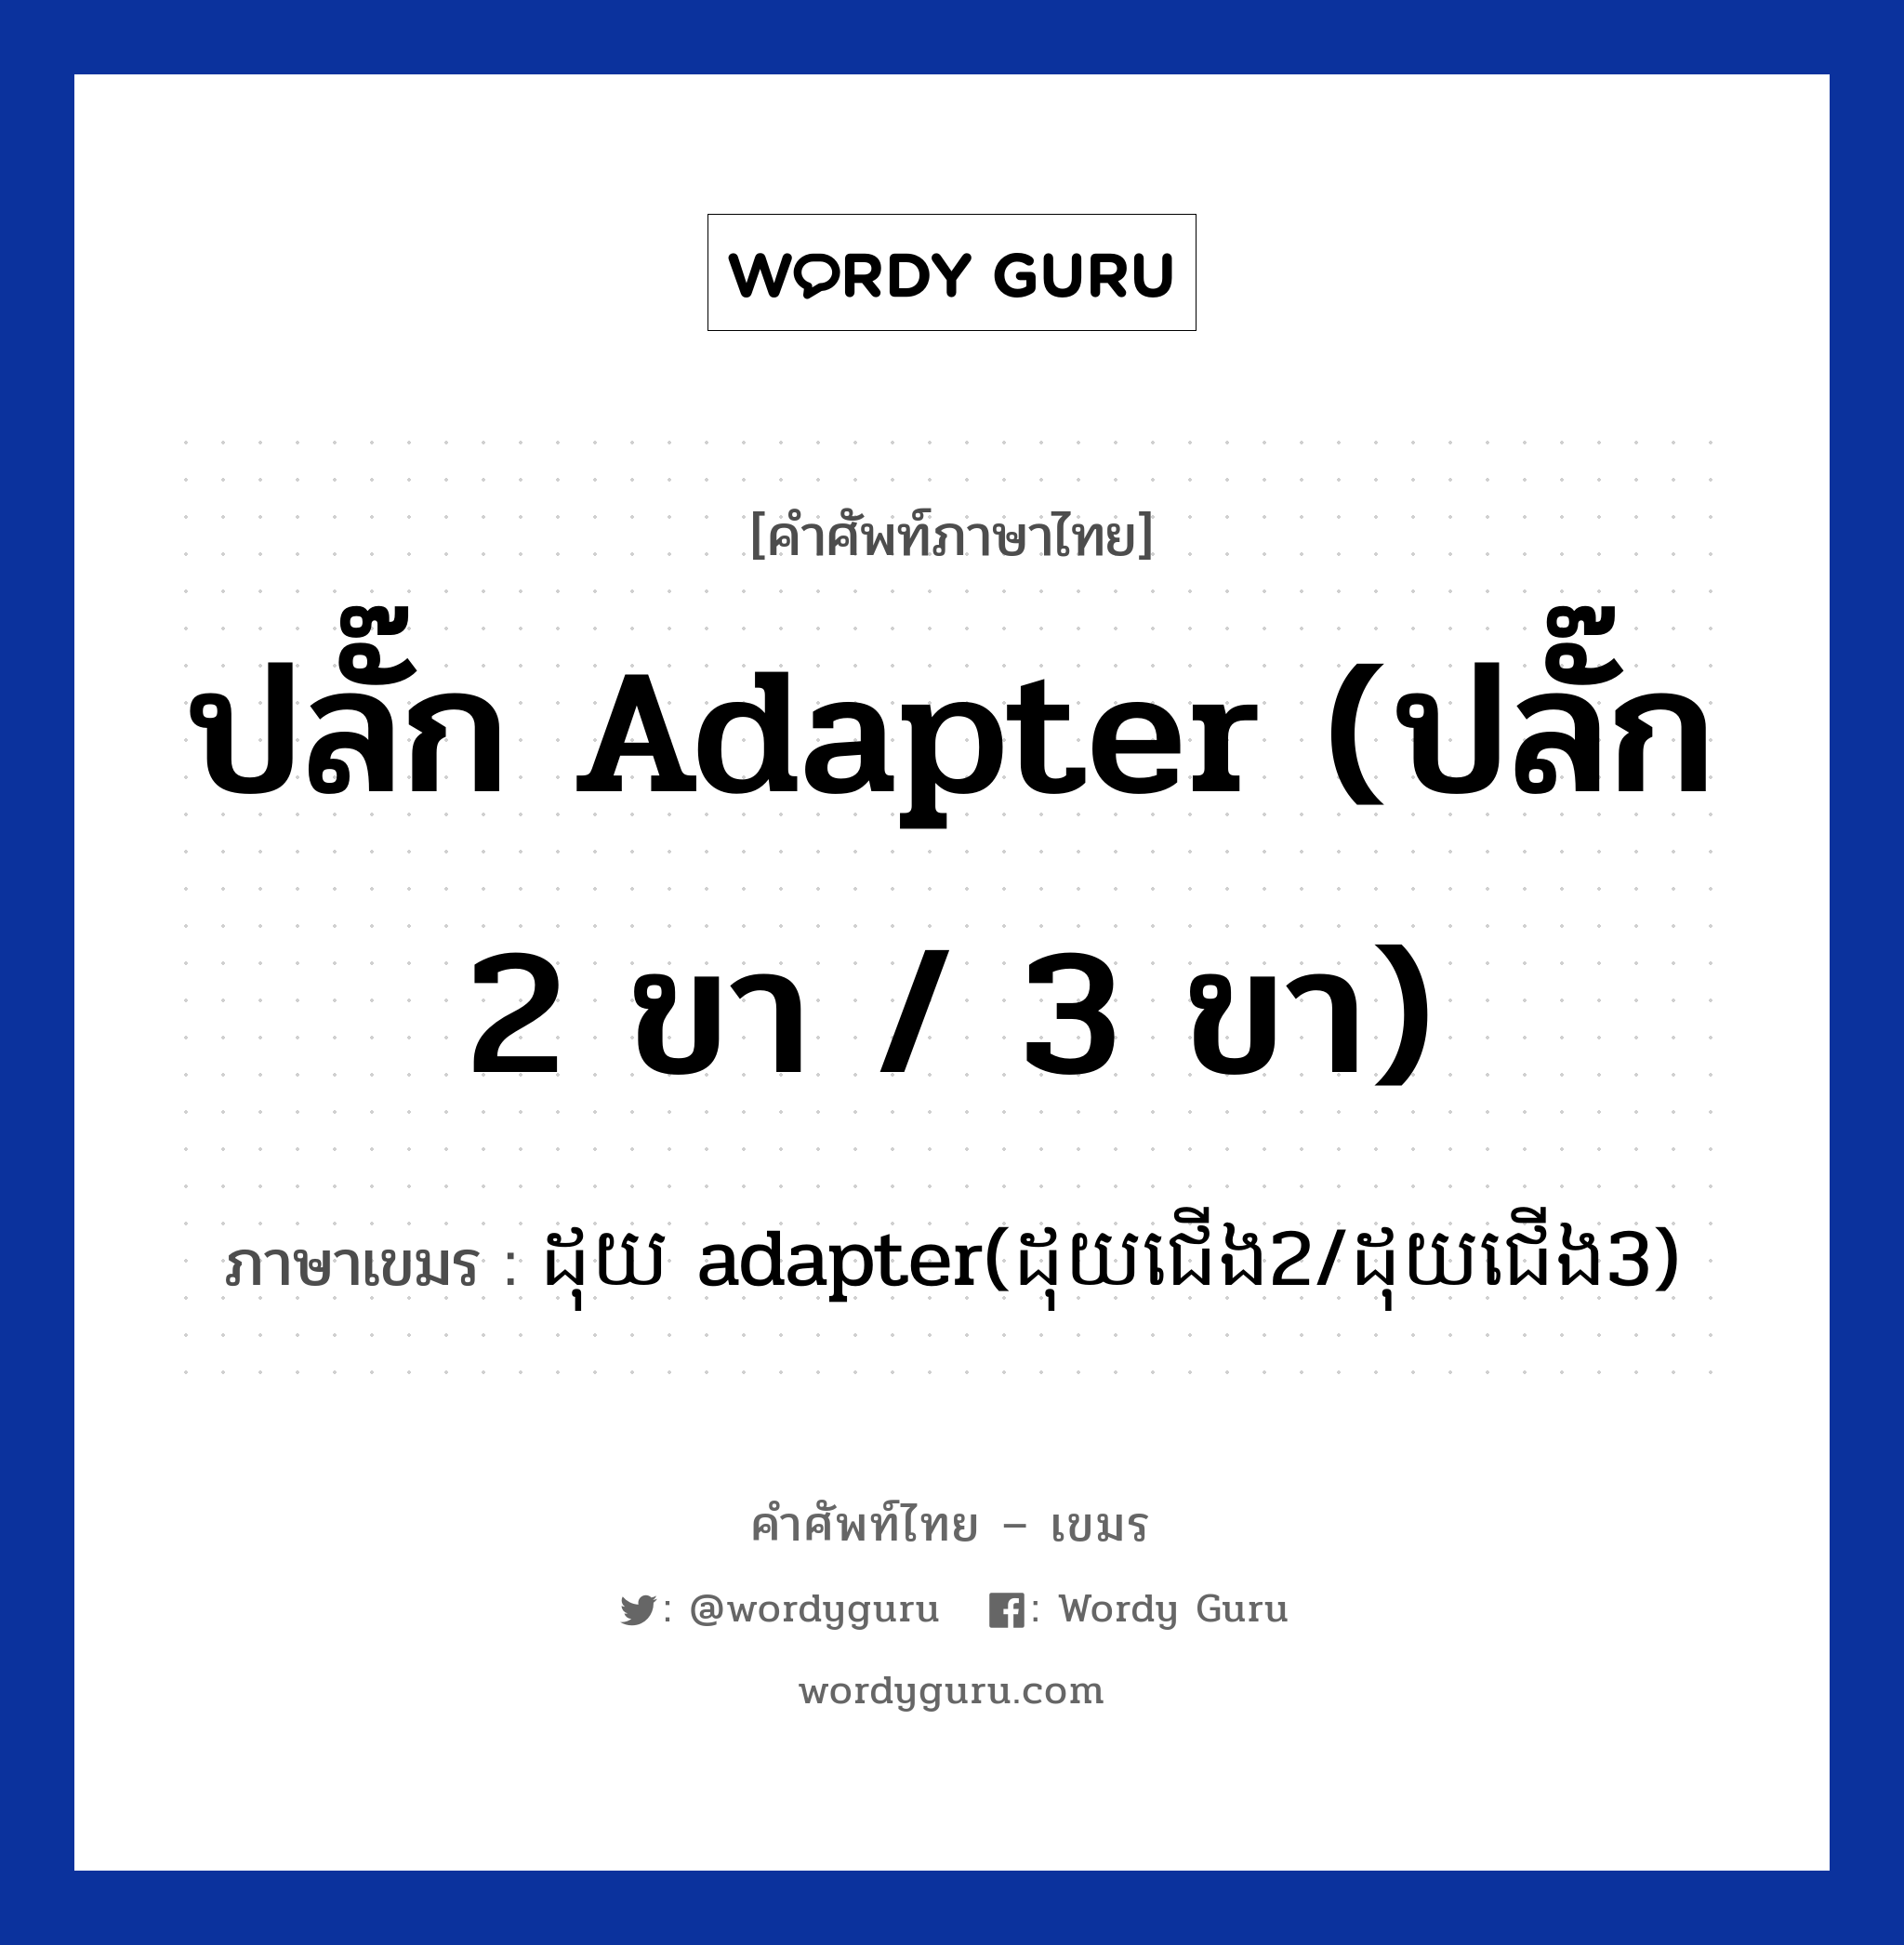 ปลั๊ก adapter (ปลั๊ก 2 ขา / 3 ขา) ภาษาเขมรคืออะไร, คำศัพท์ภาษาไทย - เขมร ปลั๊ก adapter (ปลั๊ก 2 ขา / 3 ขา) ภาษาเขมร ដុយ adapter(ដុយជេីង​2/ដុយជេីង​3) หมวด สิ่งอำนวยความสะดวก Douy adapter(douy cheong 2/ douy cheong 3) หมวด สิ่งอำนวยความสะดวก